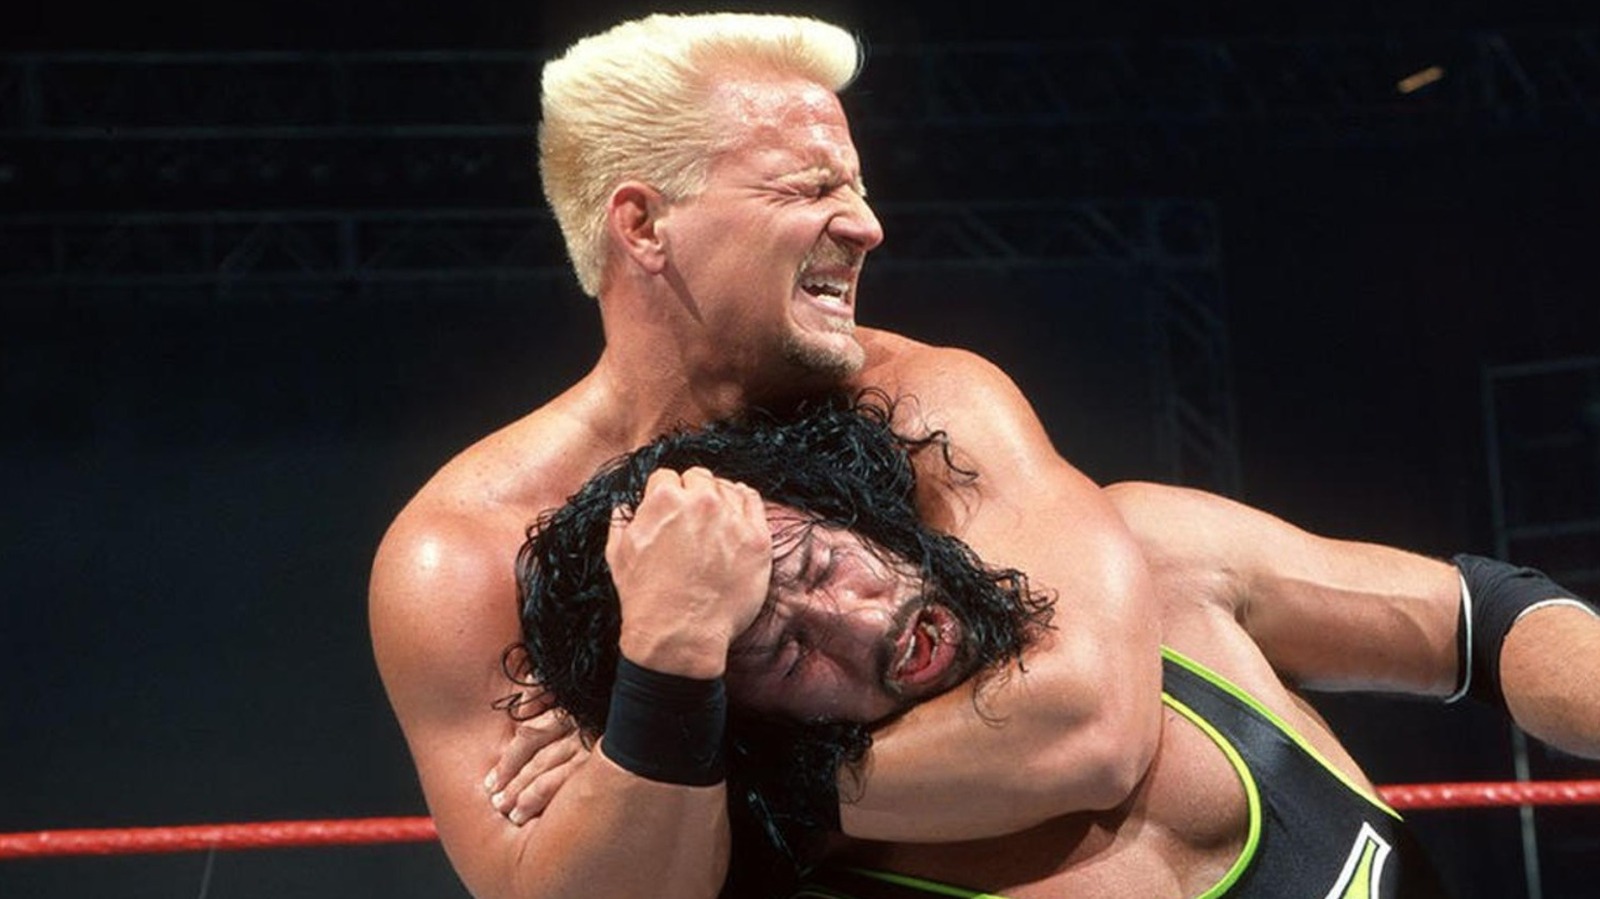 Jeff Jarrett recuerda el cambio de personaje para la Attitude Era de la WWE y su pelea de cabello con X-Pac